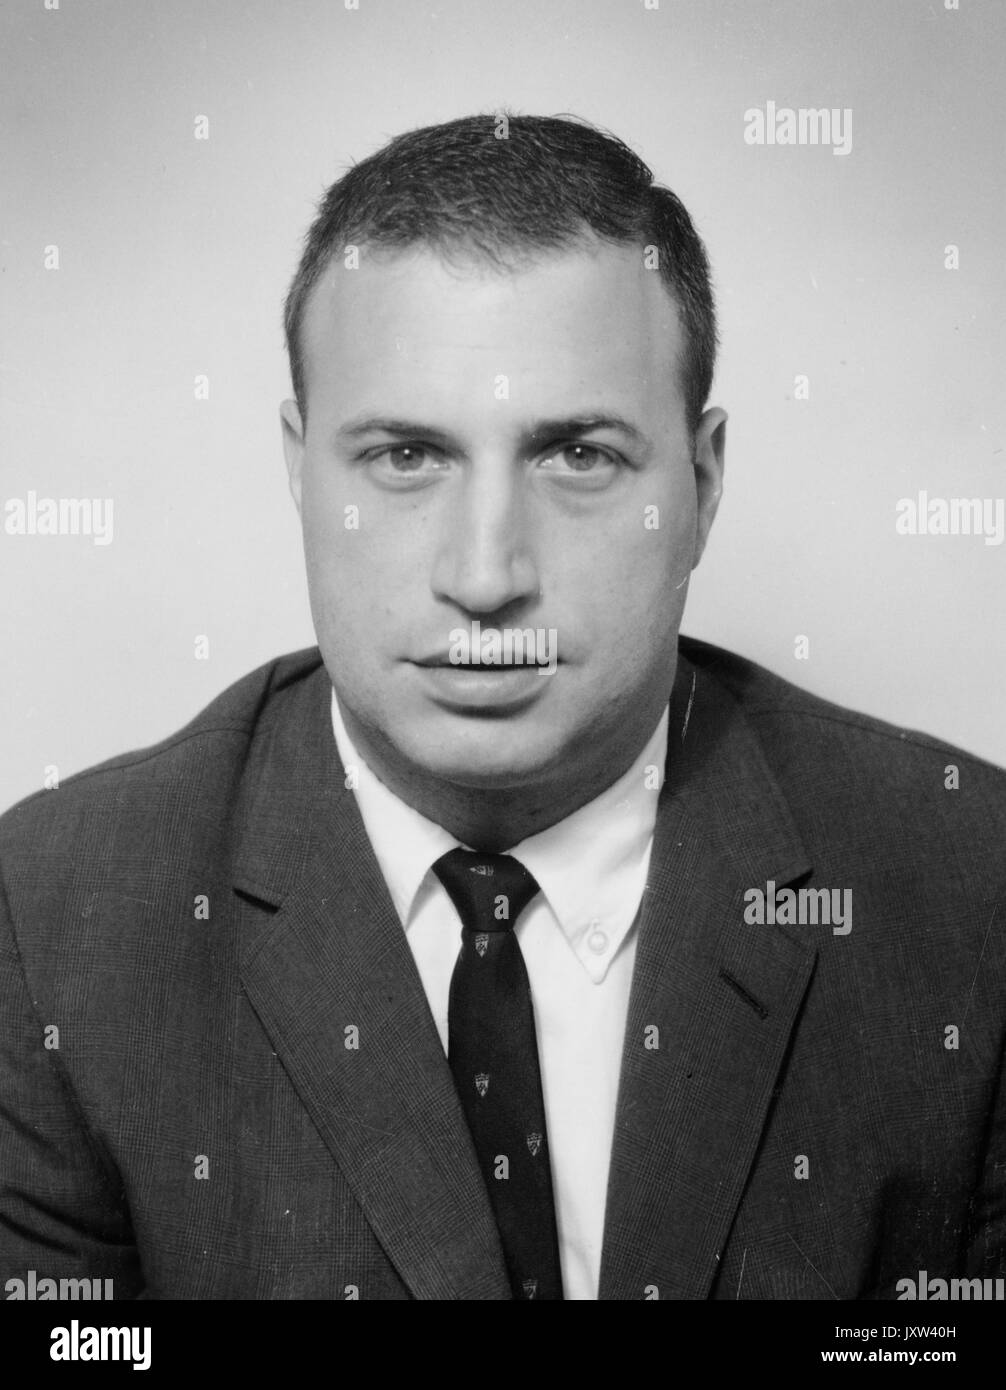 Raymond warren breslau, portrait photographique, de la poitrine vers le haut, de face, c 35 ans d'âge, 1950. Banque D'Images